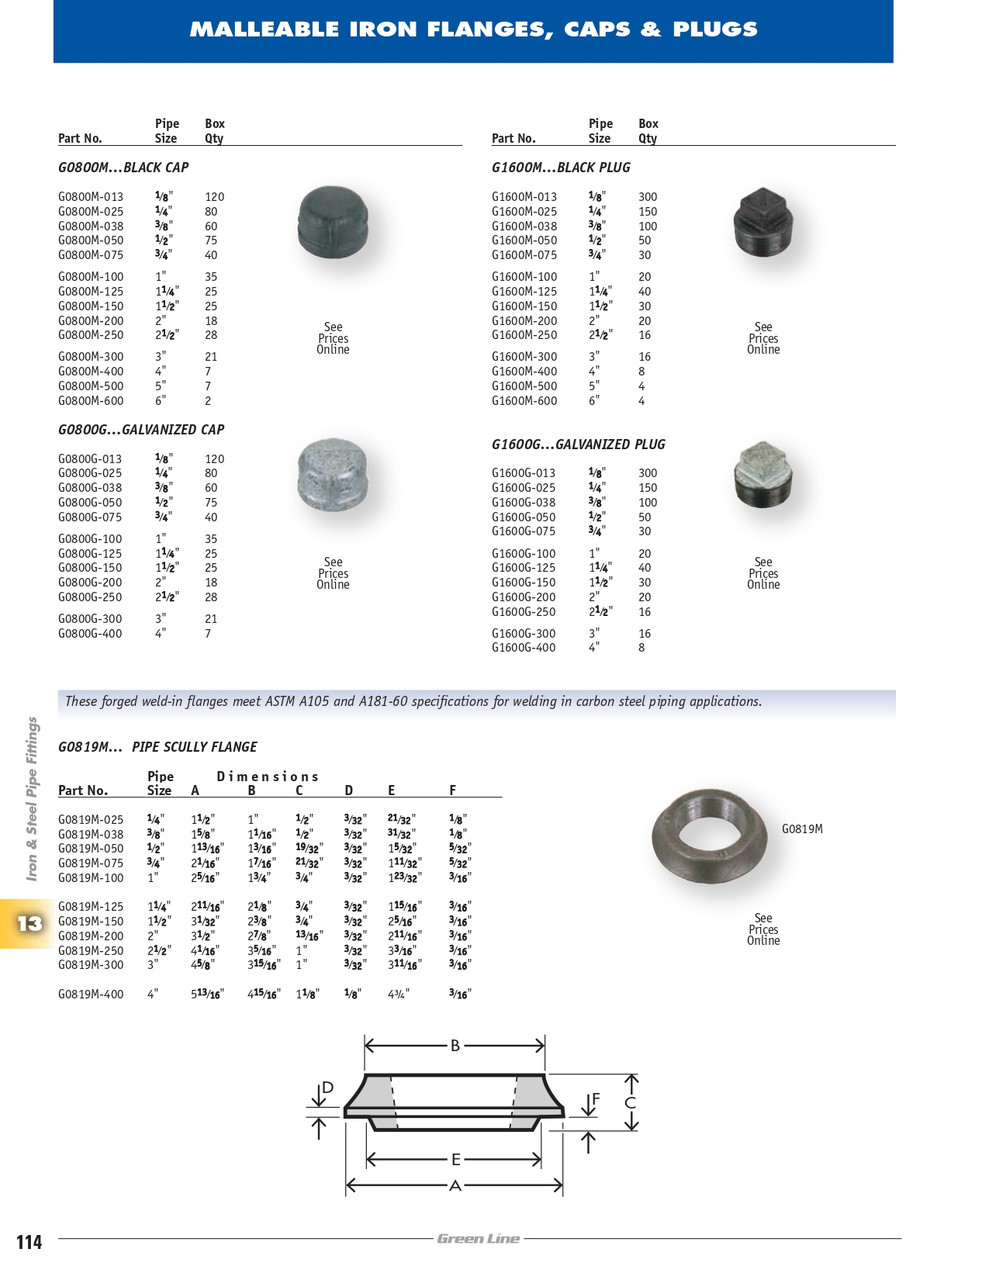 1" Sch. 40 Galvanized Iron Male NPT Plug   G1600G-100